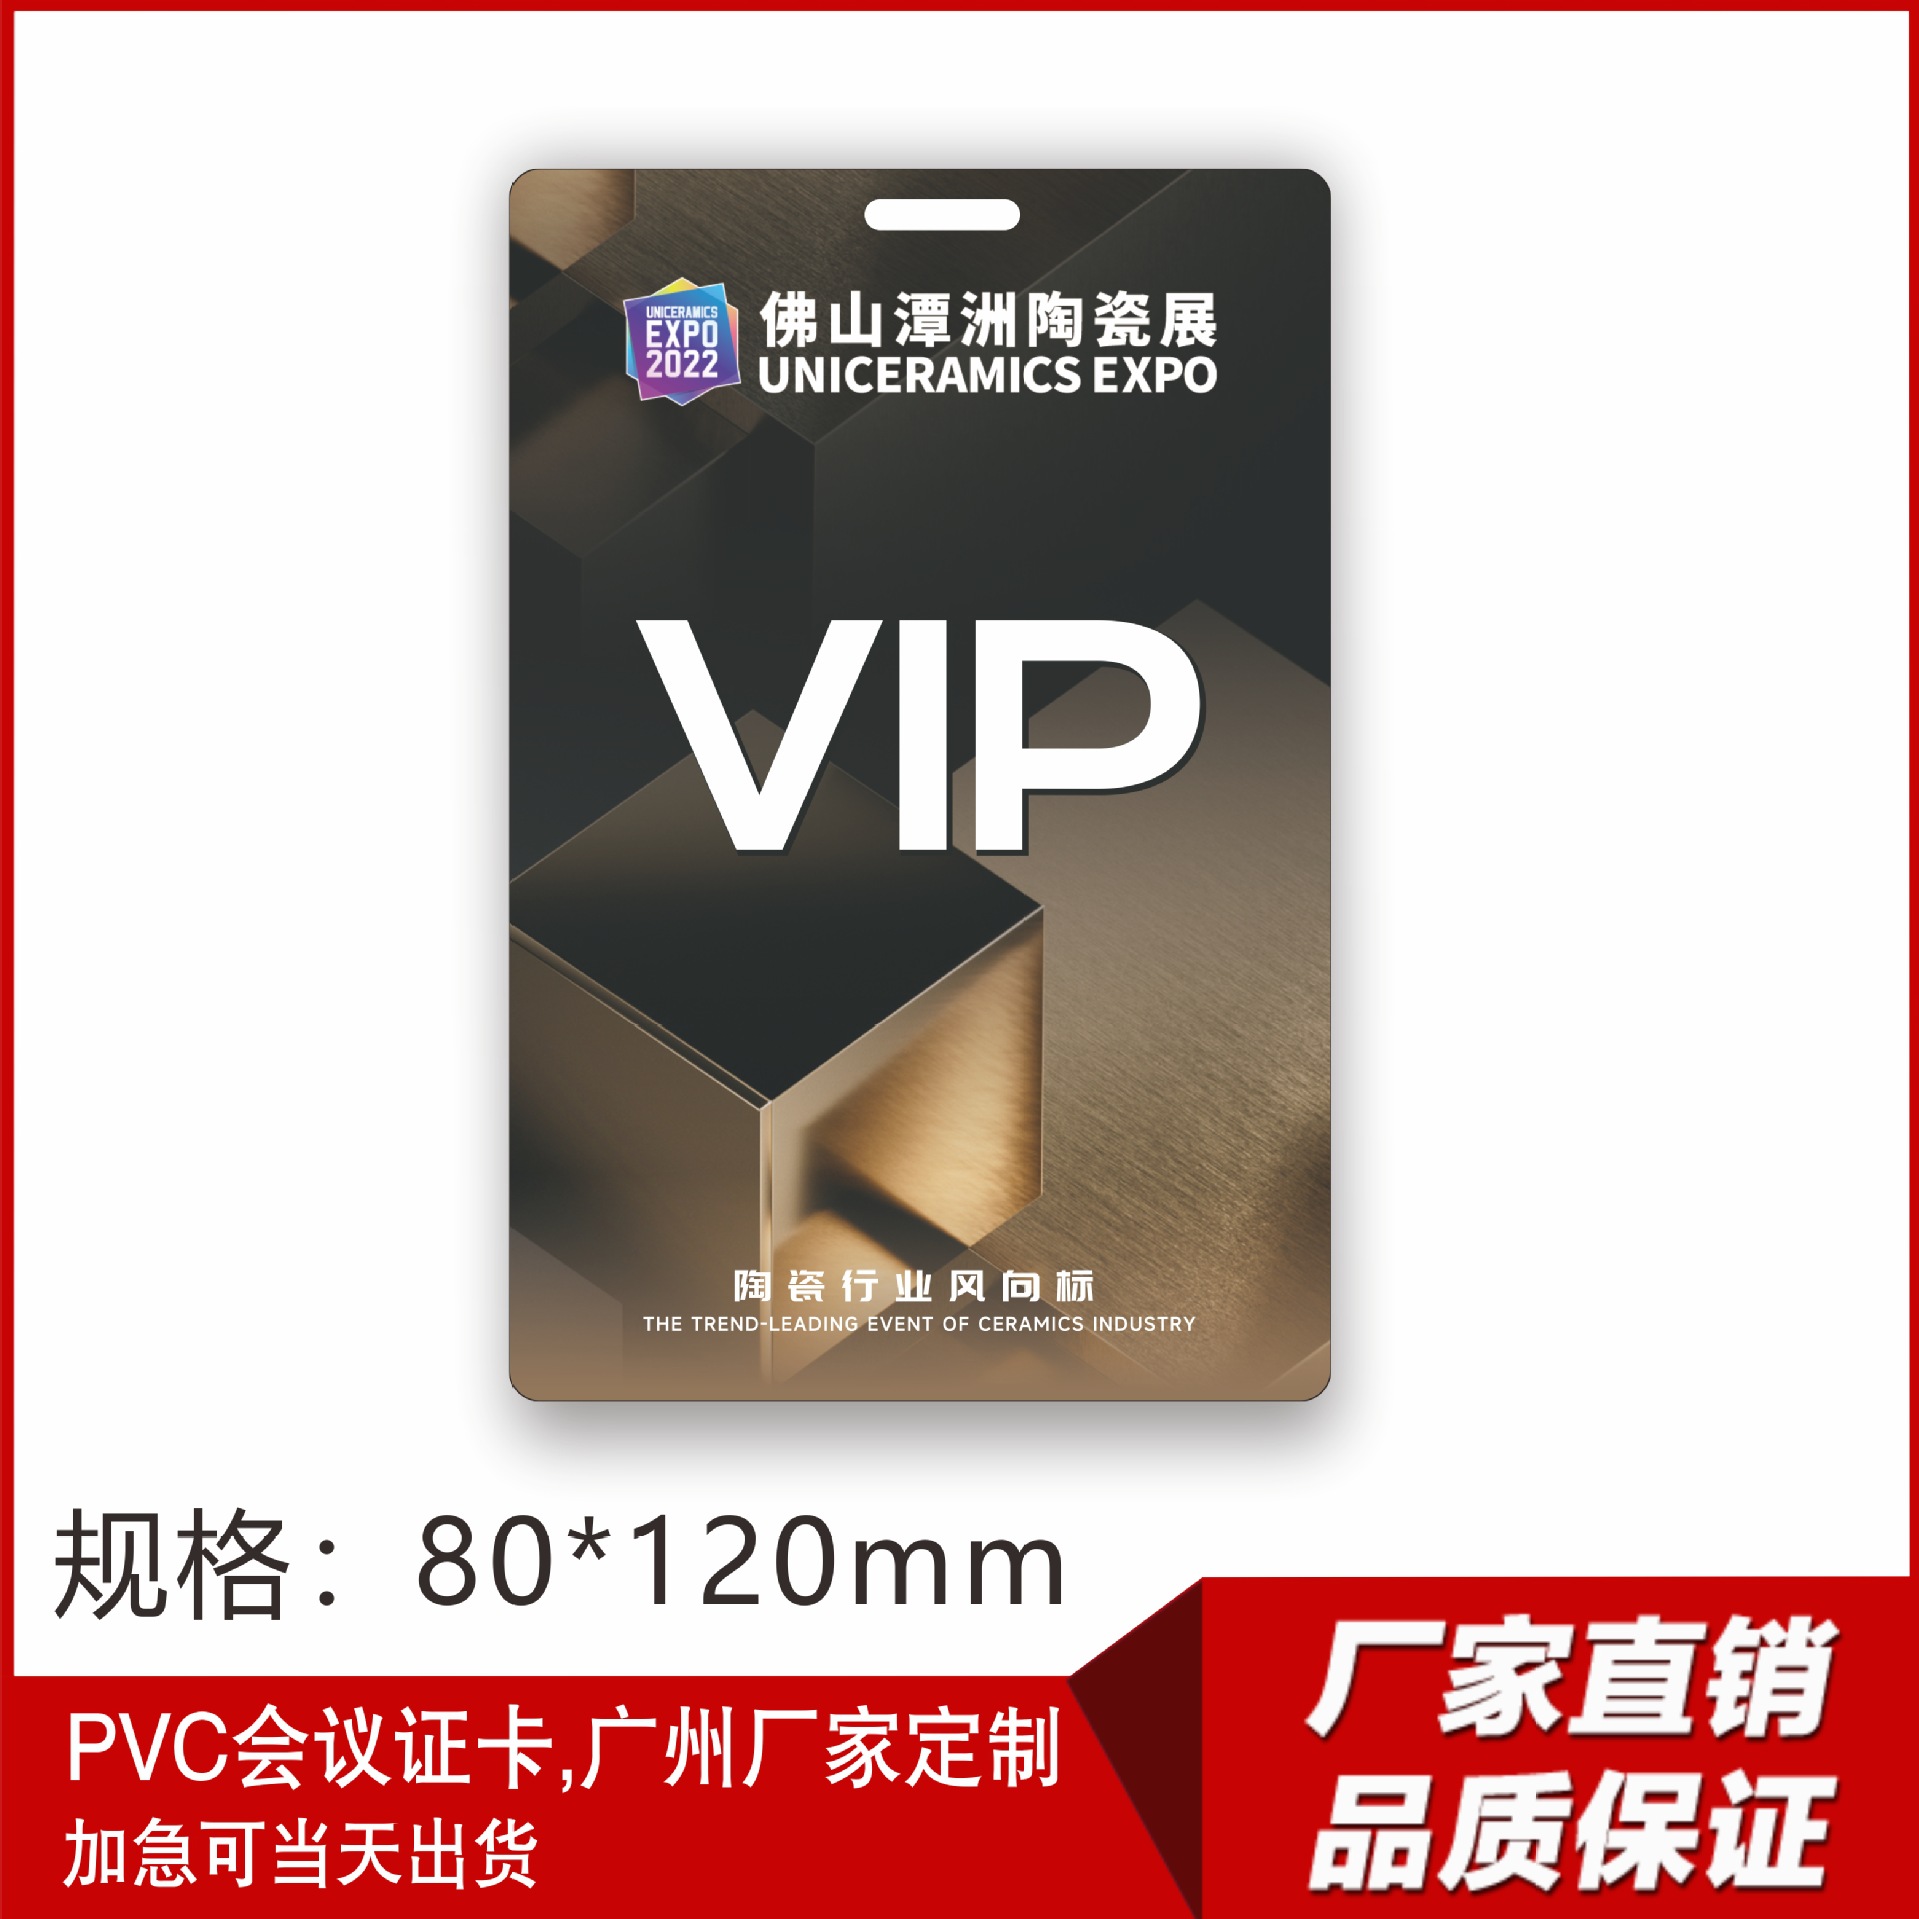 厂家直销一对一免费设计PVC展商卡嘉宾卡免费加急VIP工作人员工牌